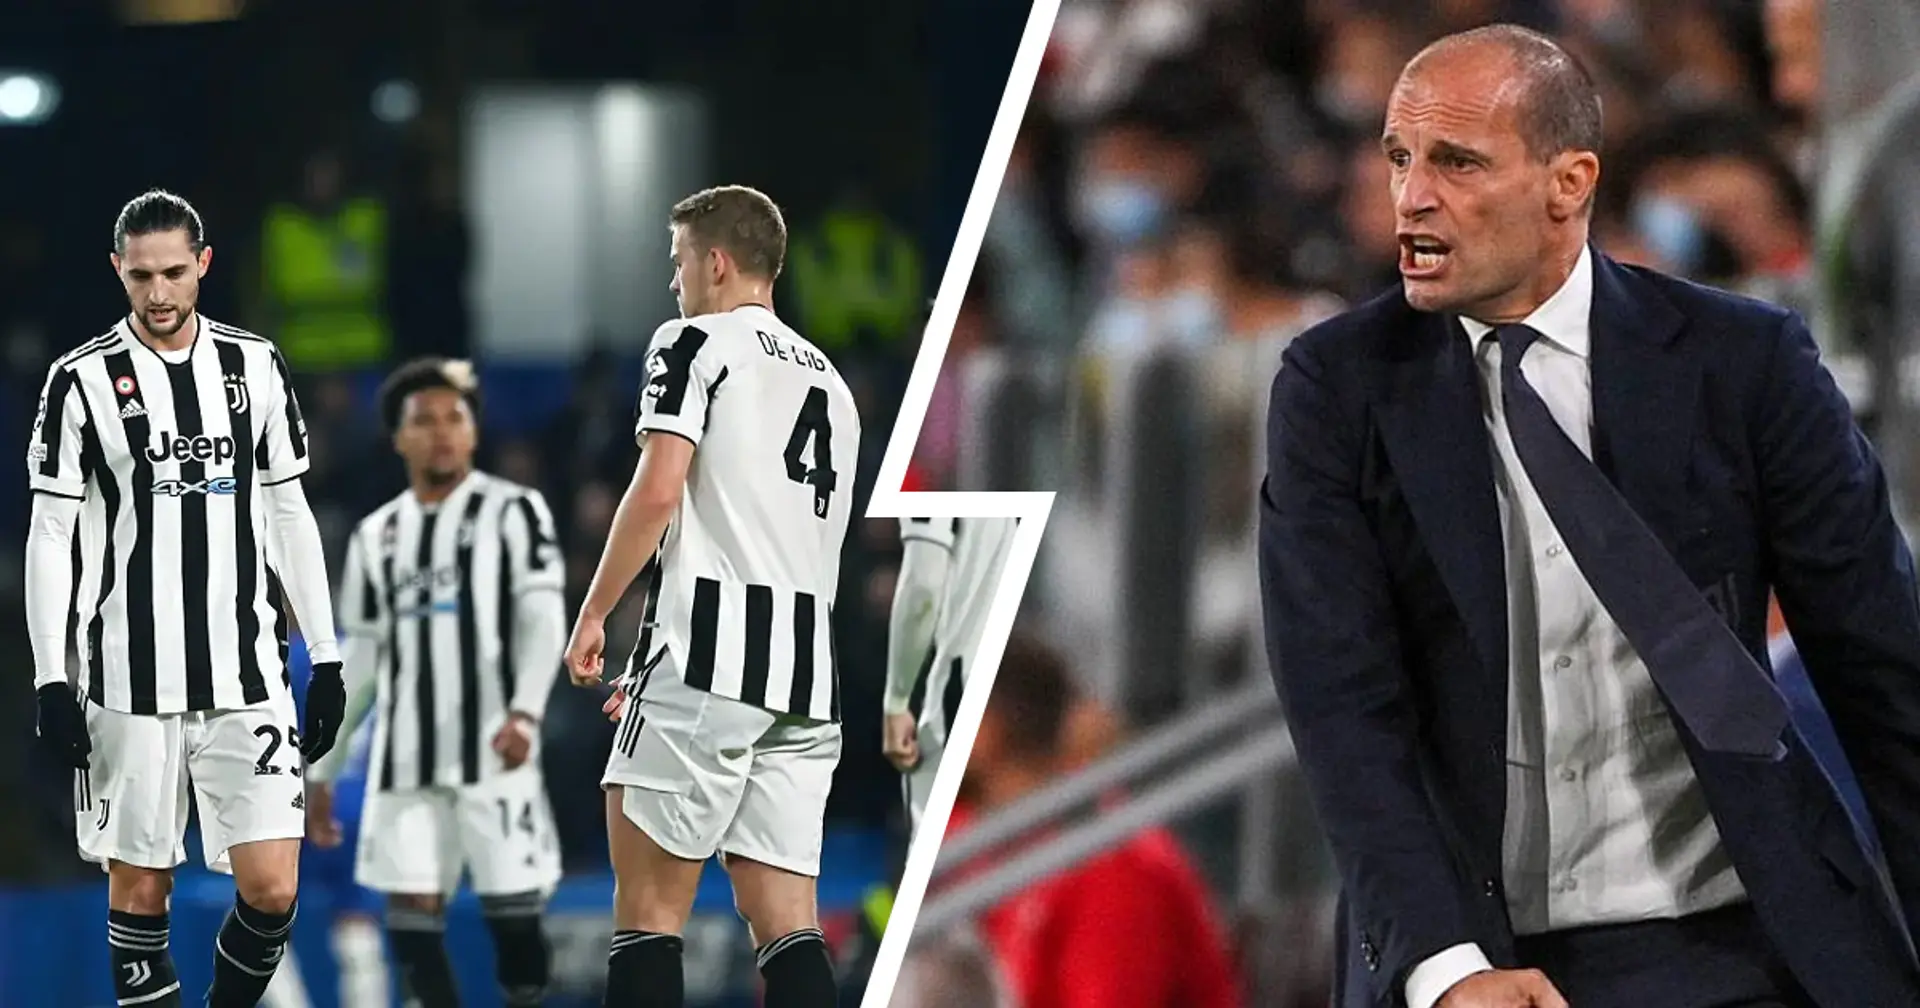 Allegri alza i toni dopo la gara di Champions contro il Malmo: duro sfogo negli spogliatoi del tecnico della Juventus